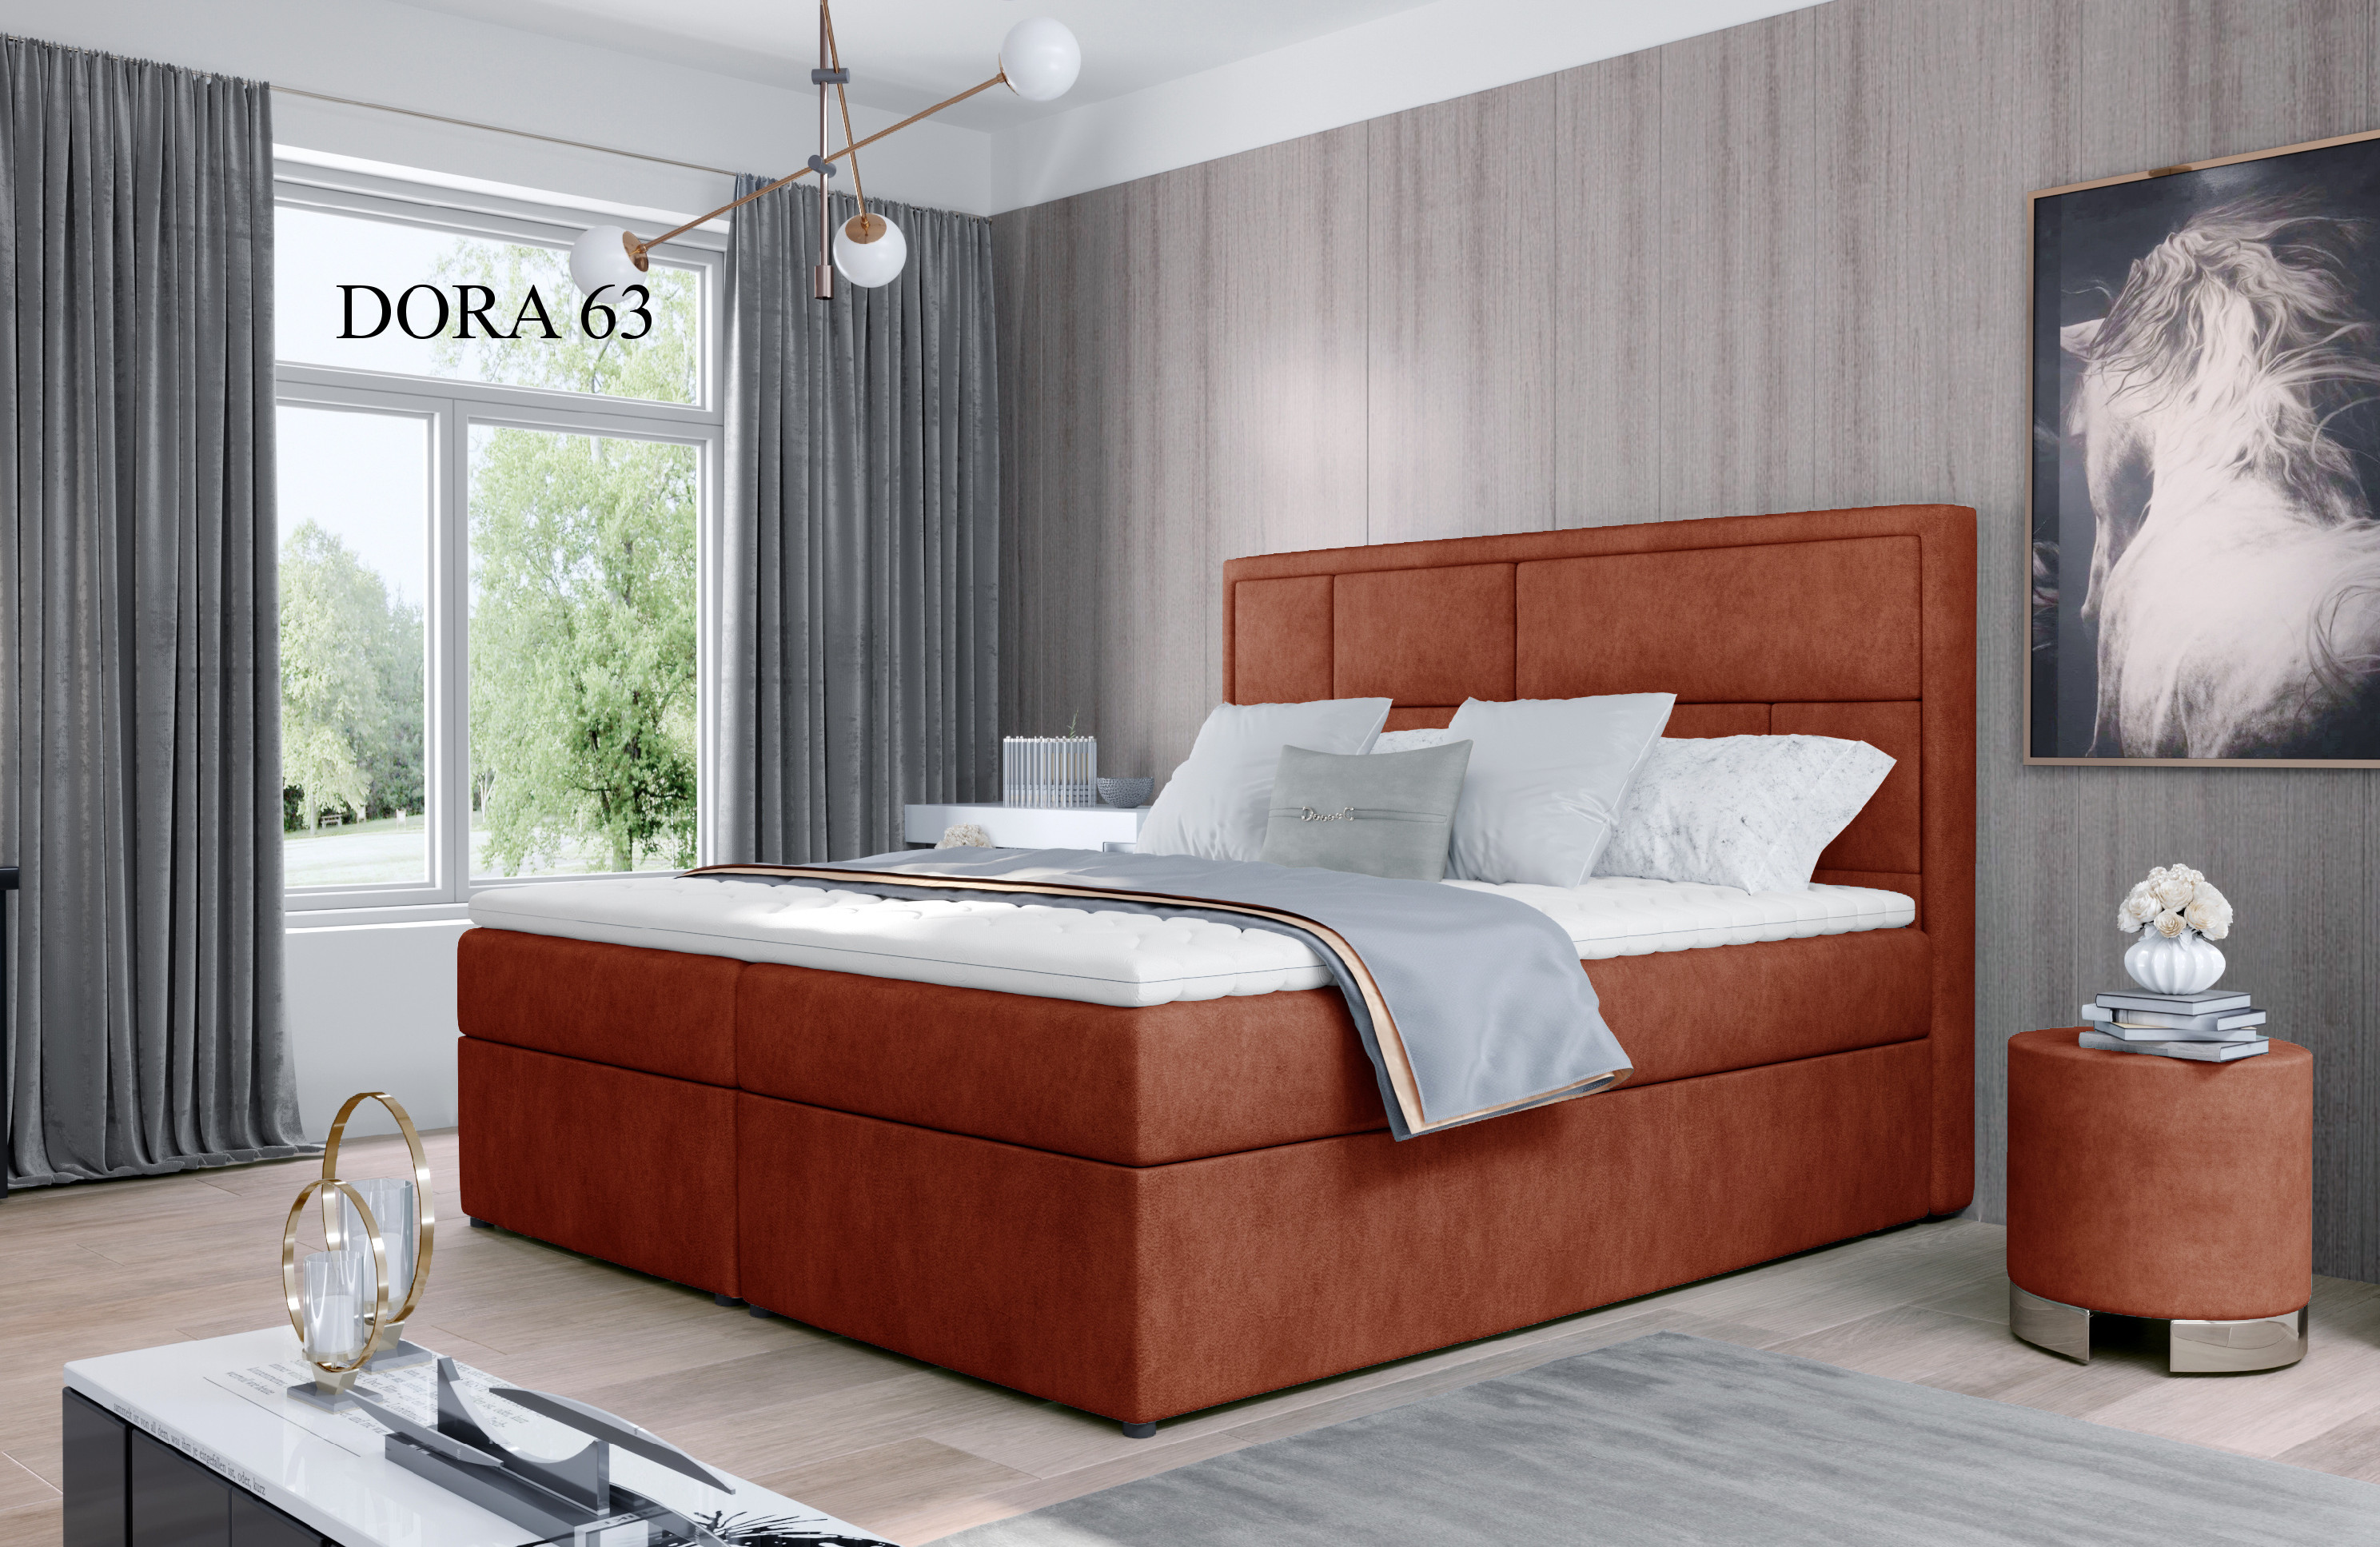 Čalouněná postel MERON Boxsprings 160 x 200 cm Provedení: Dora 63